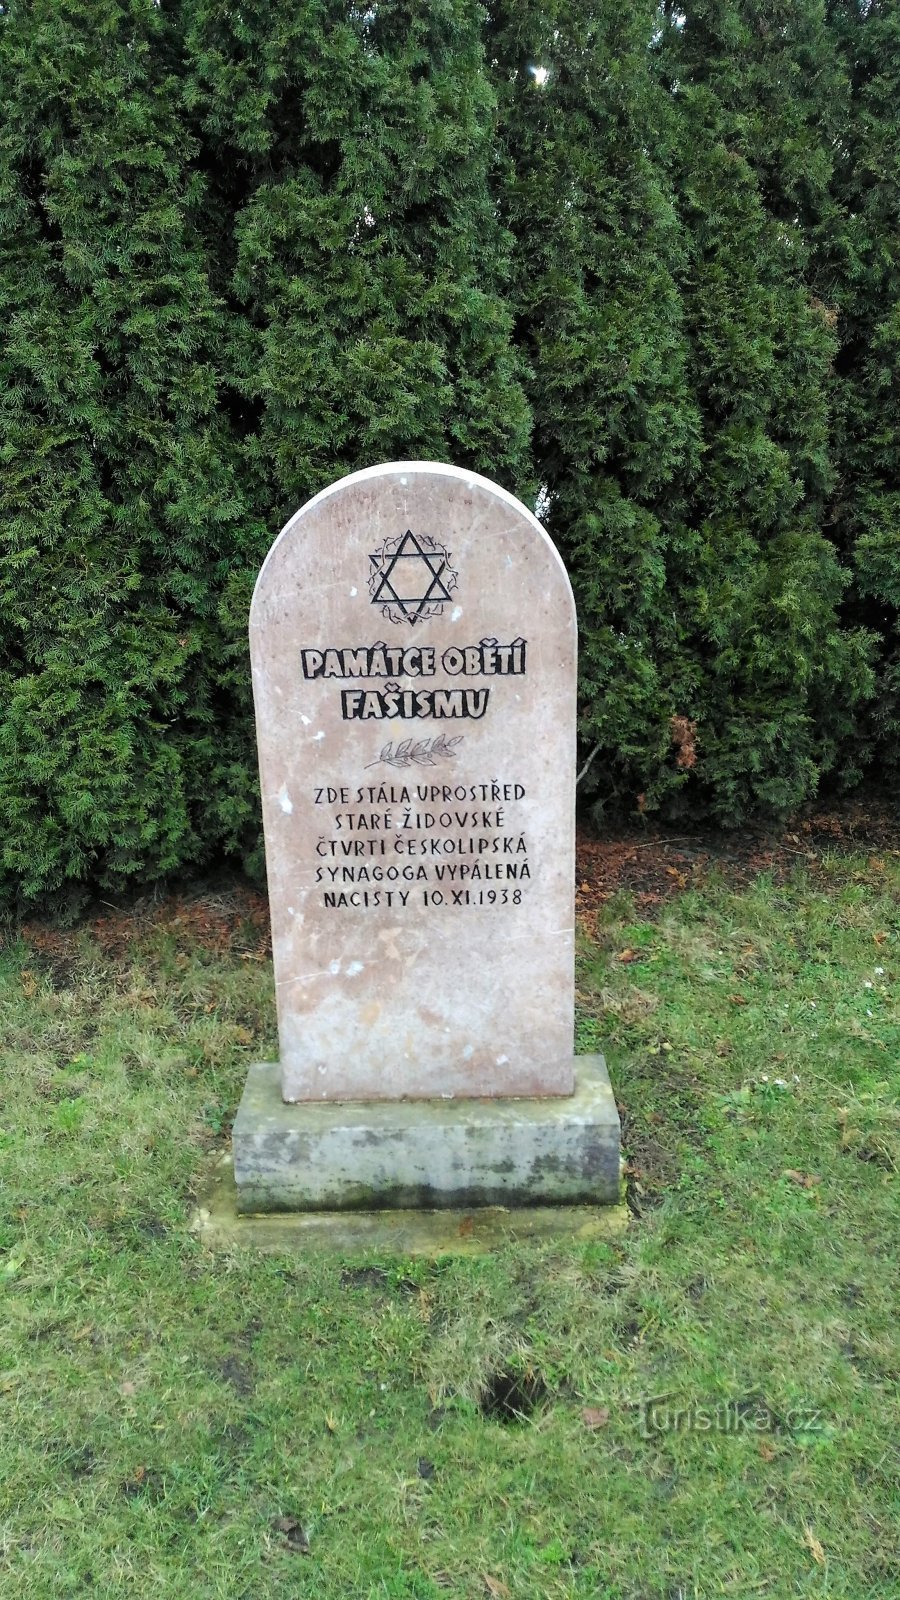 Monument voor de slachtoffers van het fascisme in Česká Lípa.